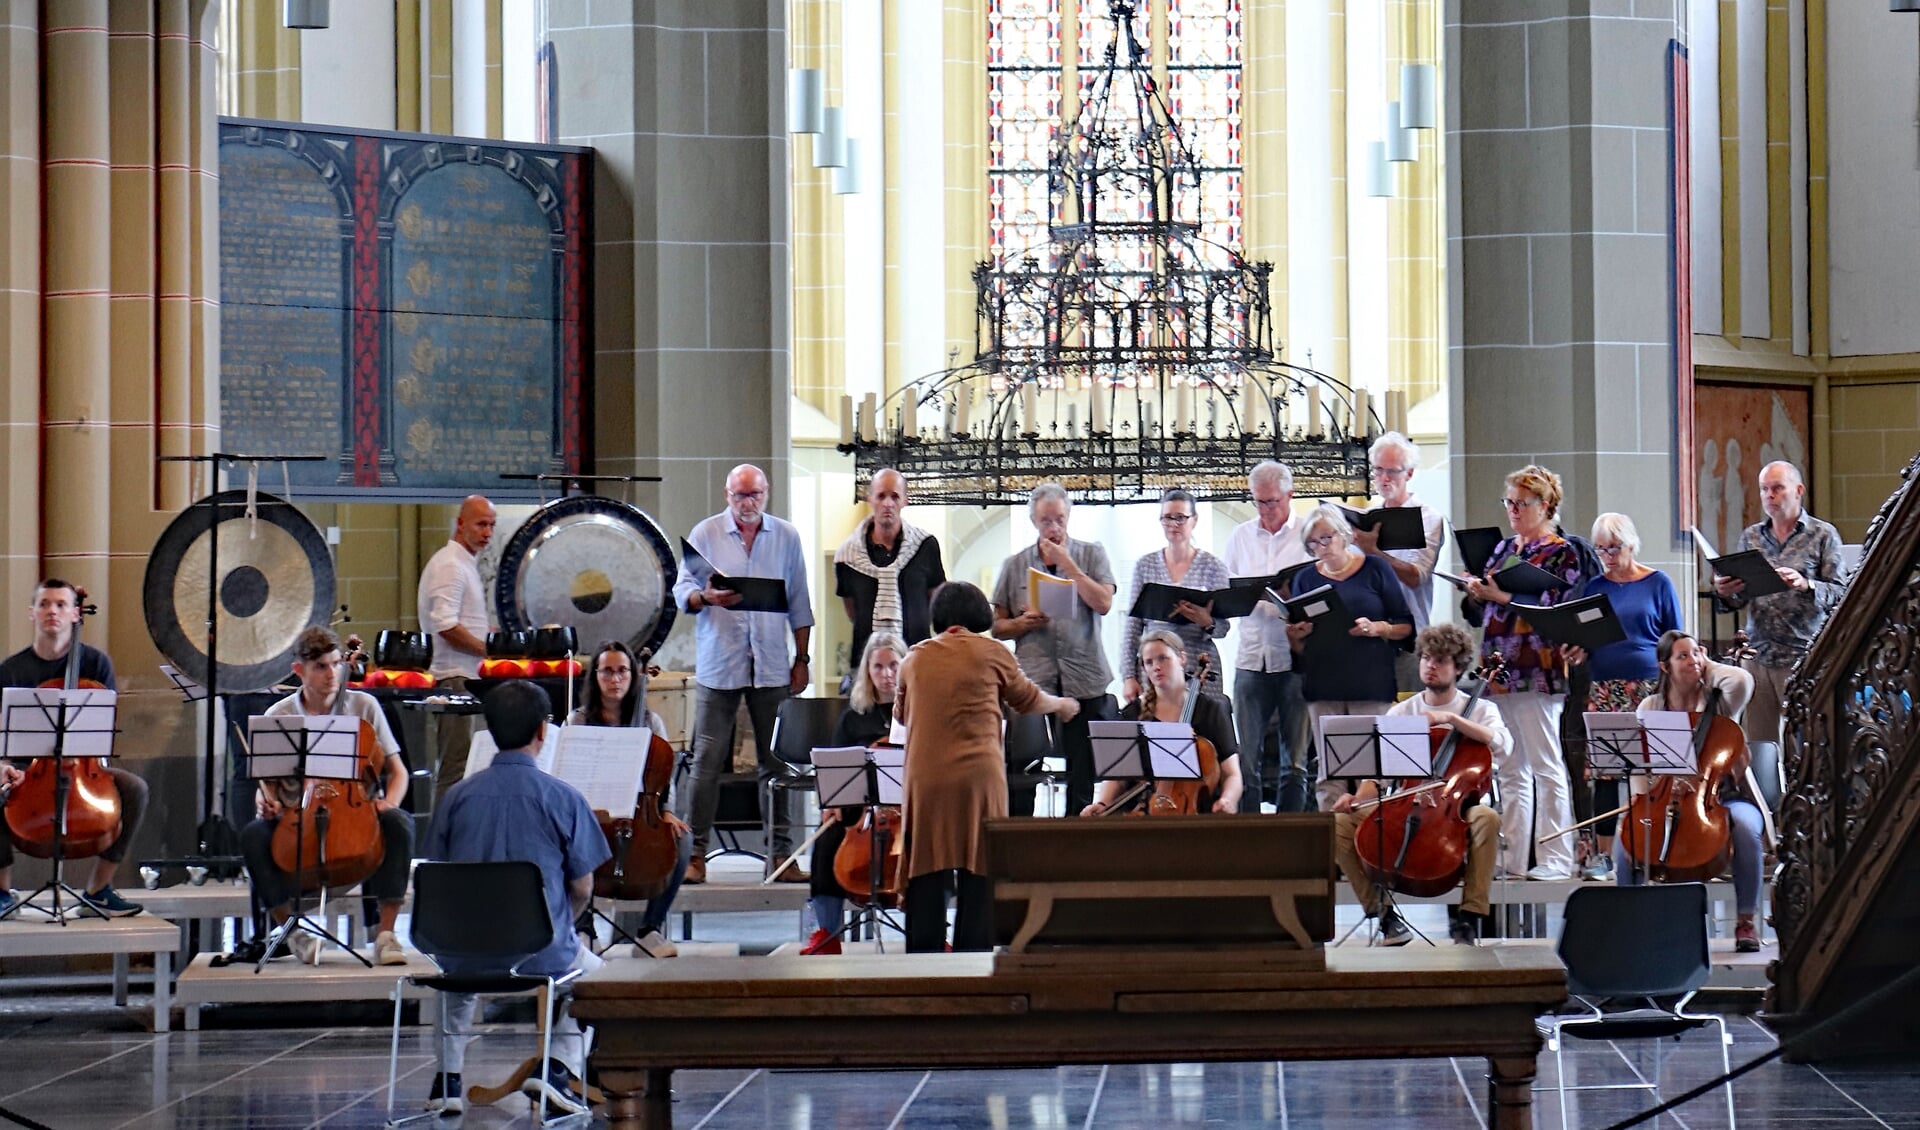 Koor en muzikanten in de Walburgiskerk. Foto: Sander Grootendorst